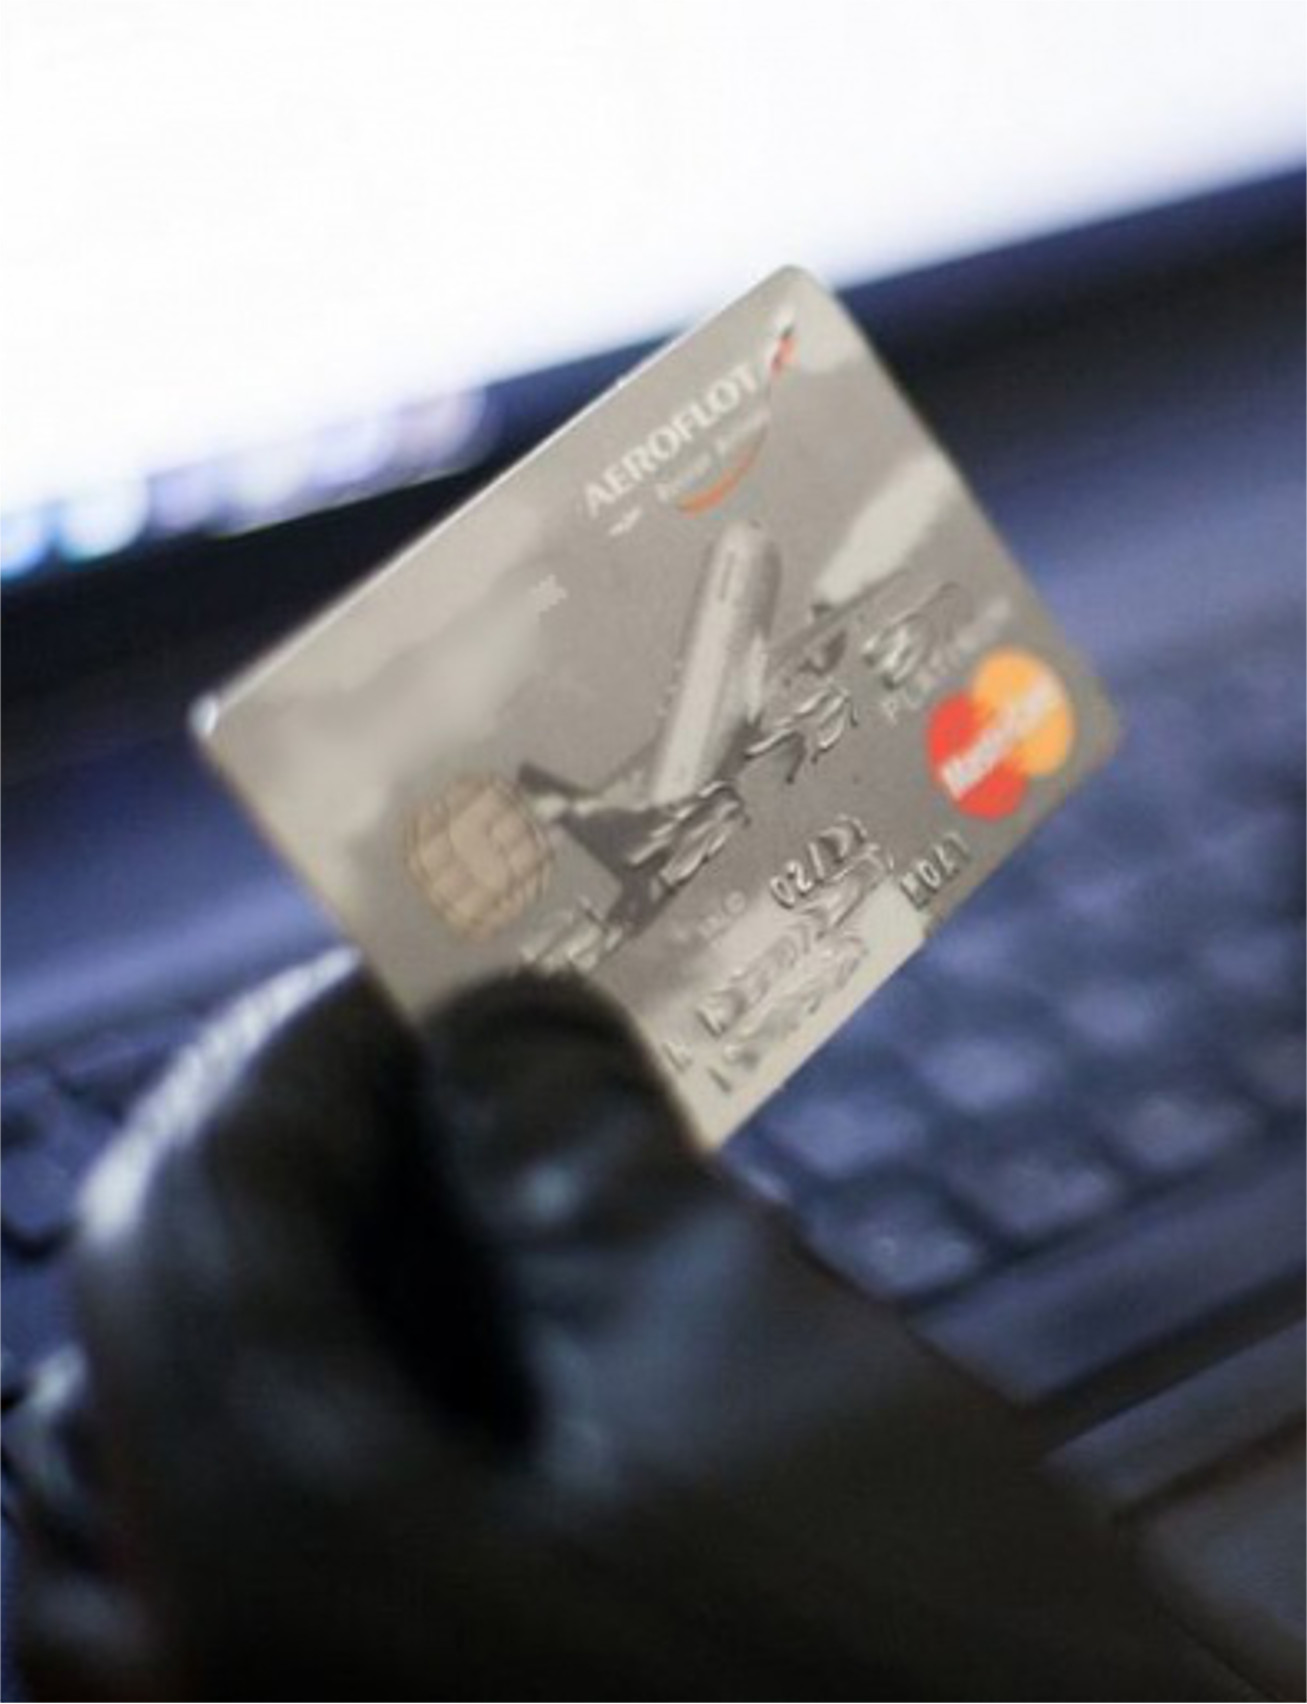 Rust desk мошенничество с банковскими картами фото 99